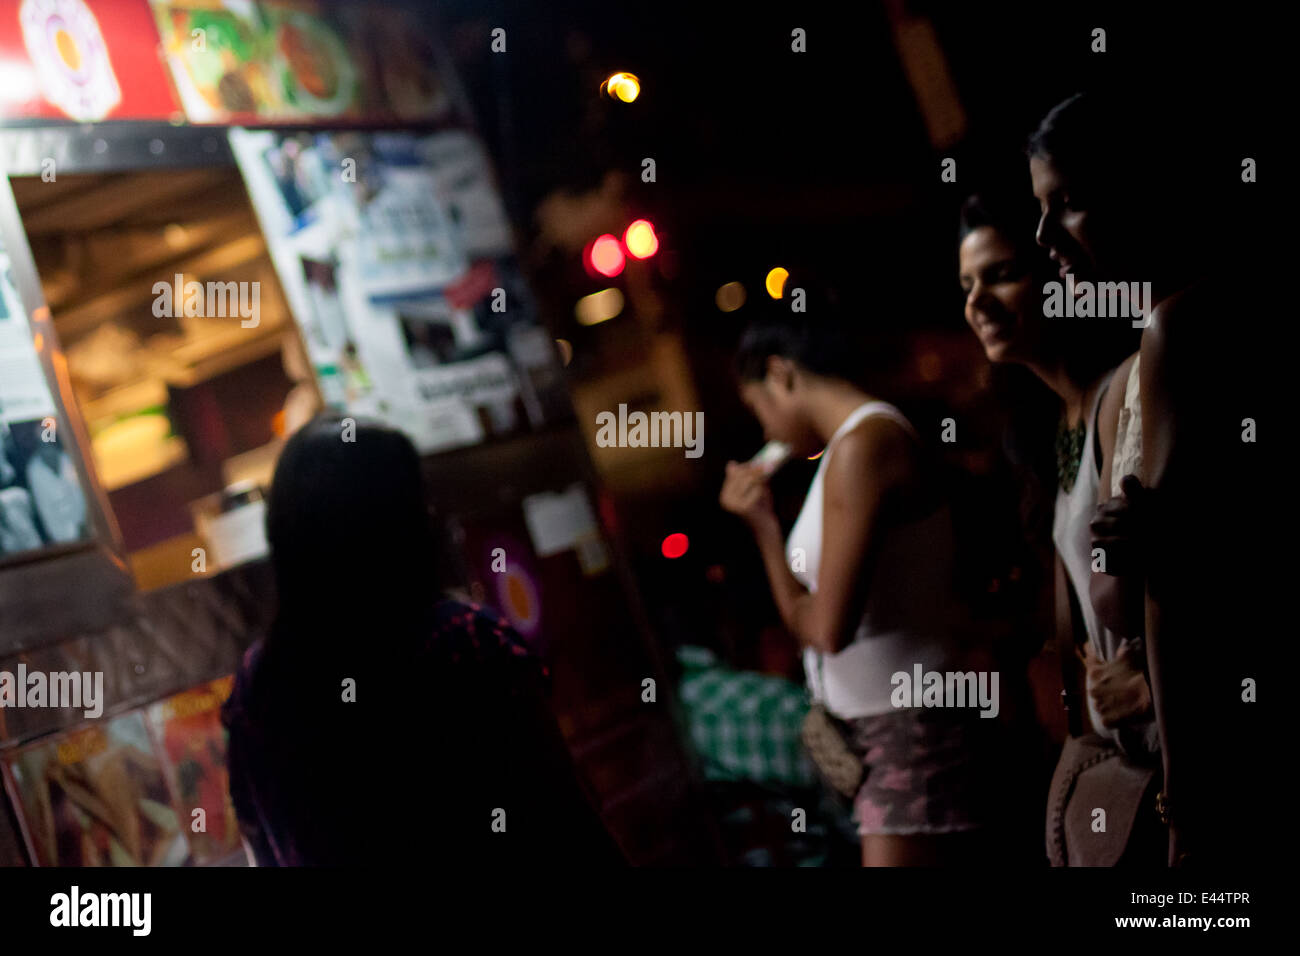 Mädchen in der Nacht vor Hot Dog stand in New York City. Stockfoto